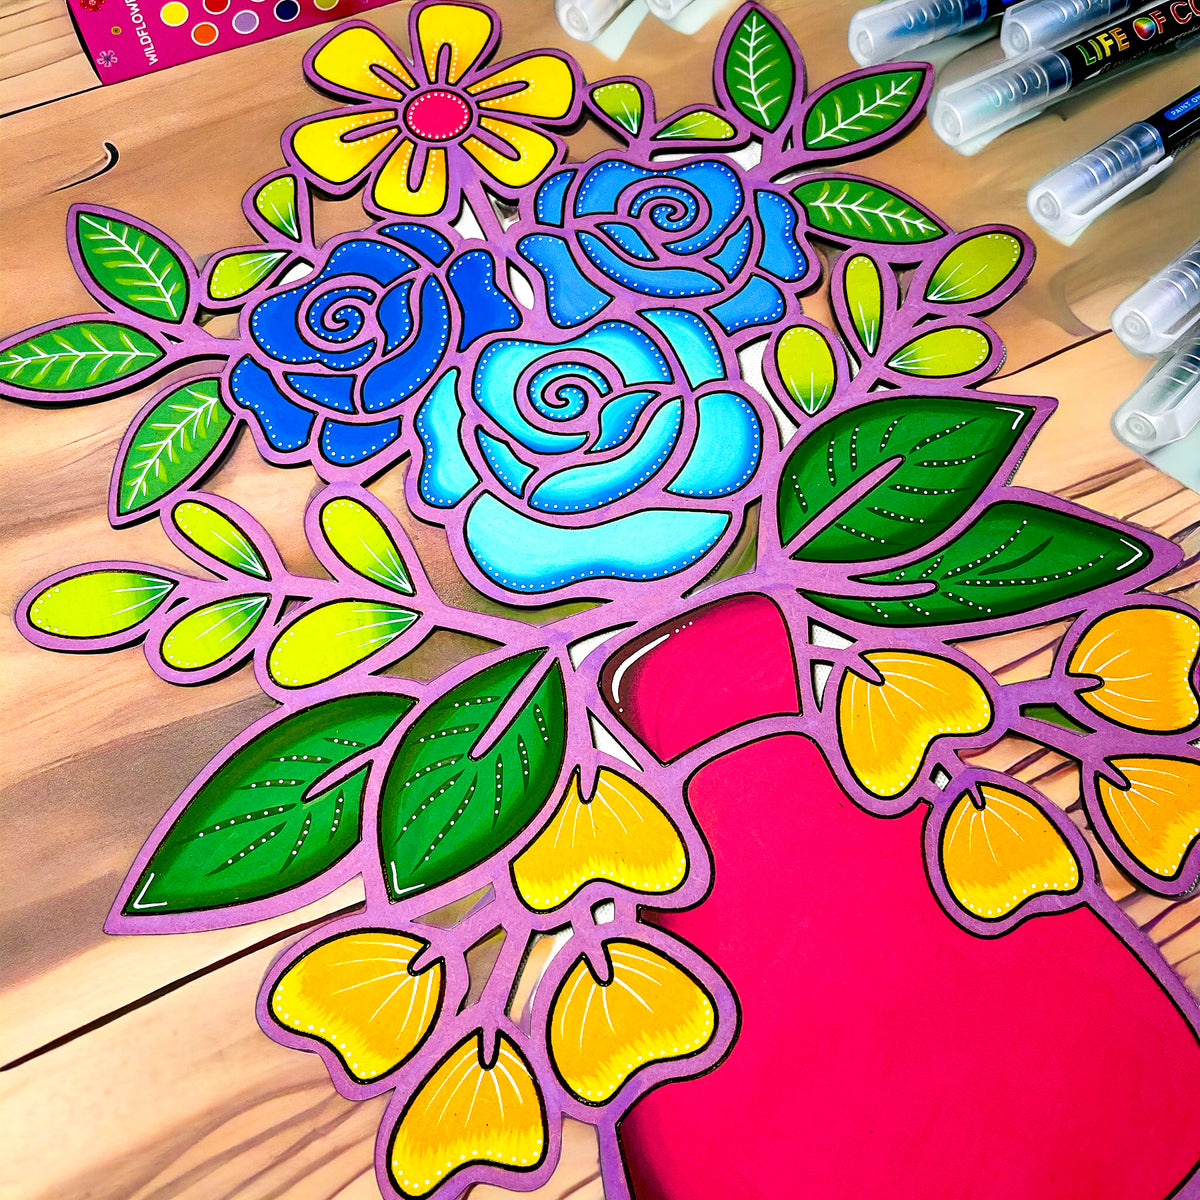 Flowers in Vase Painting Kit - Summer Meadow